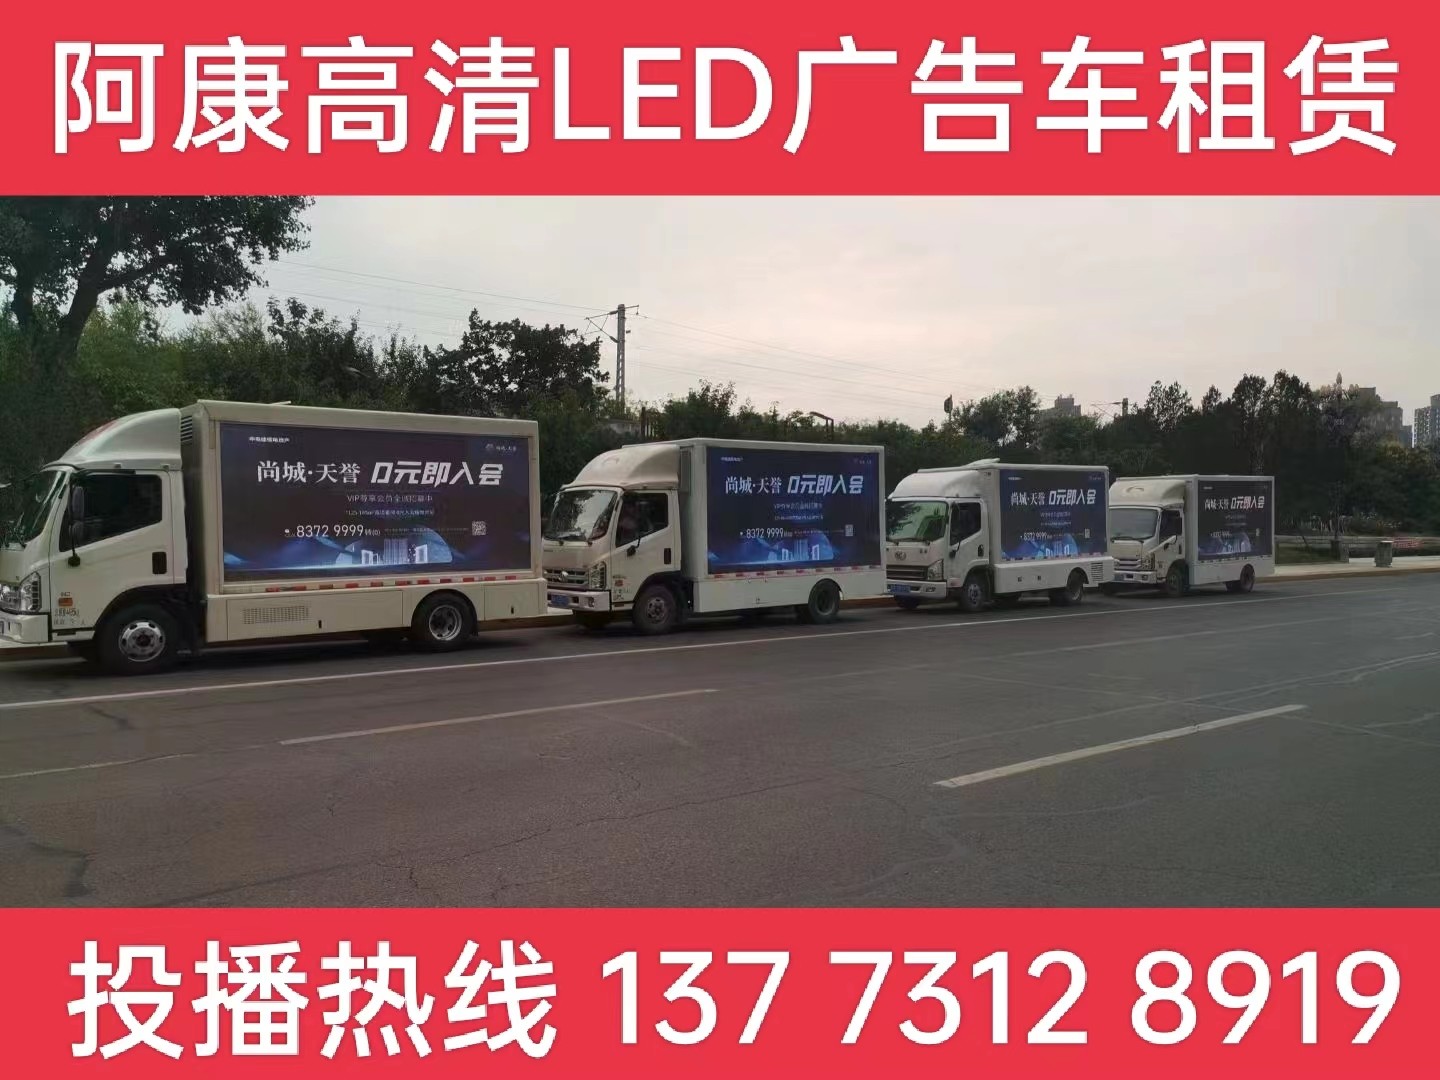 吴江LED广告车出租公司